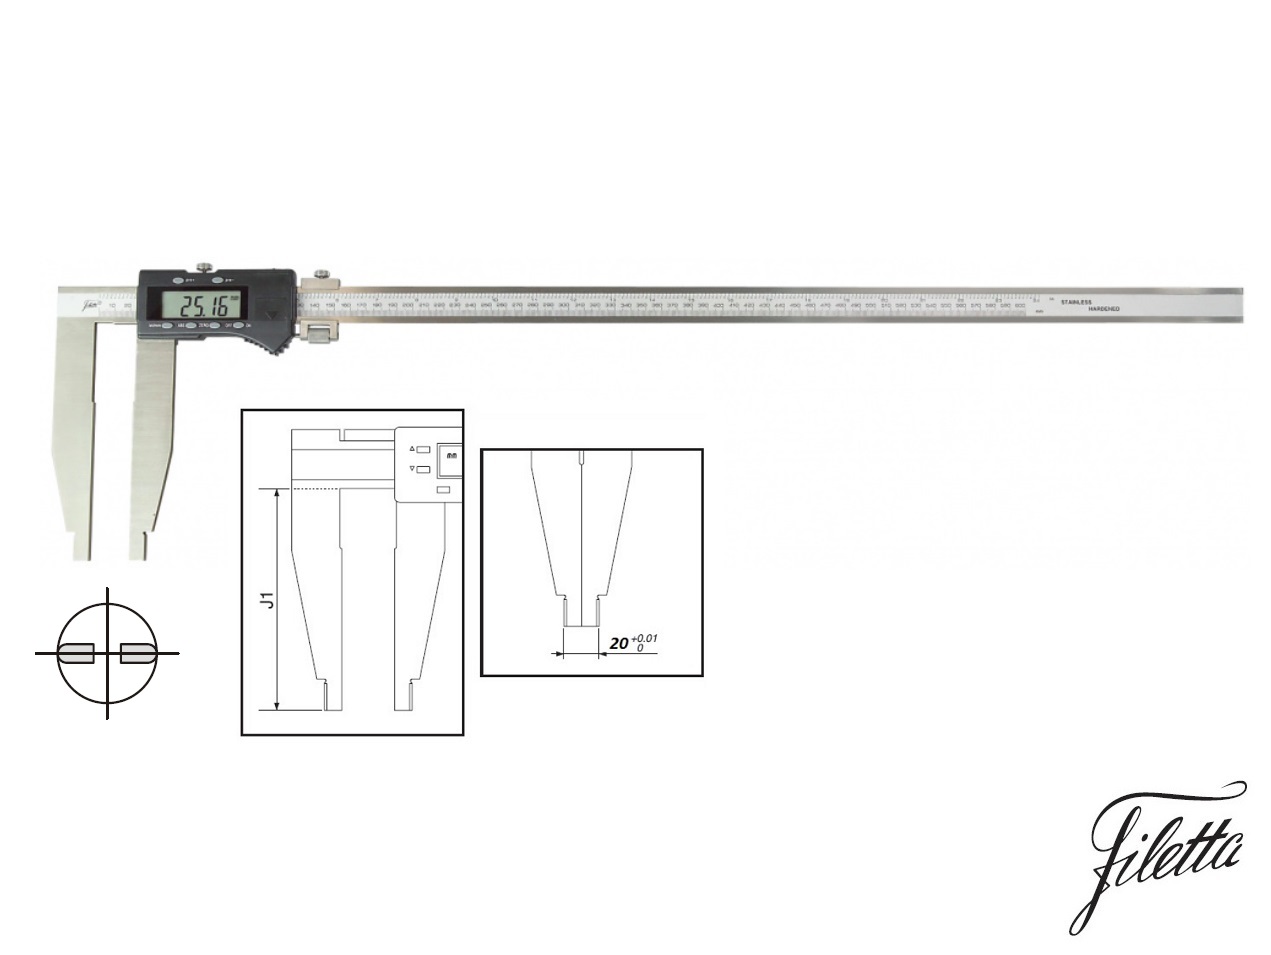 Digitální posuvné měřítko Filetta 0-500 mm bez nožíků, s měřicími čelistmi 150 mm